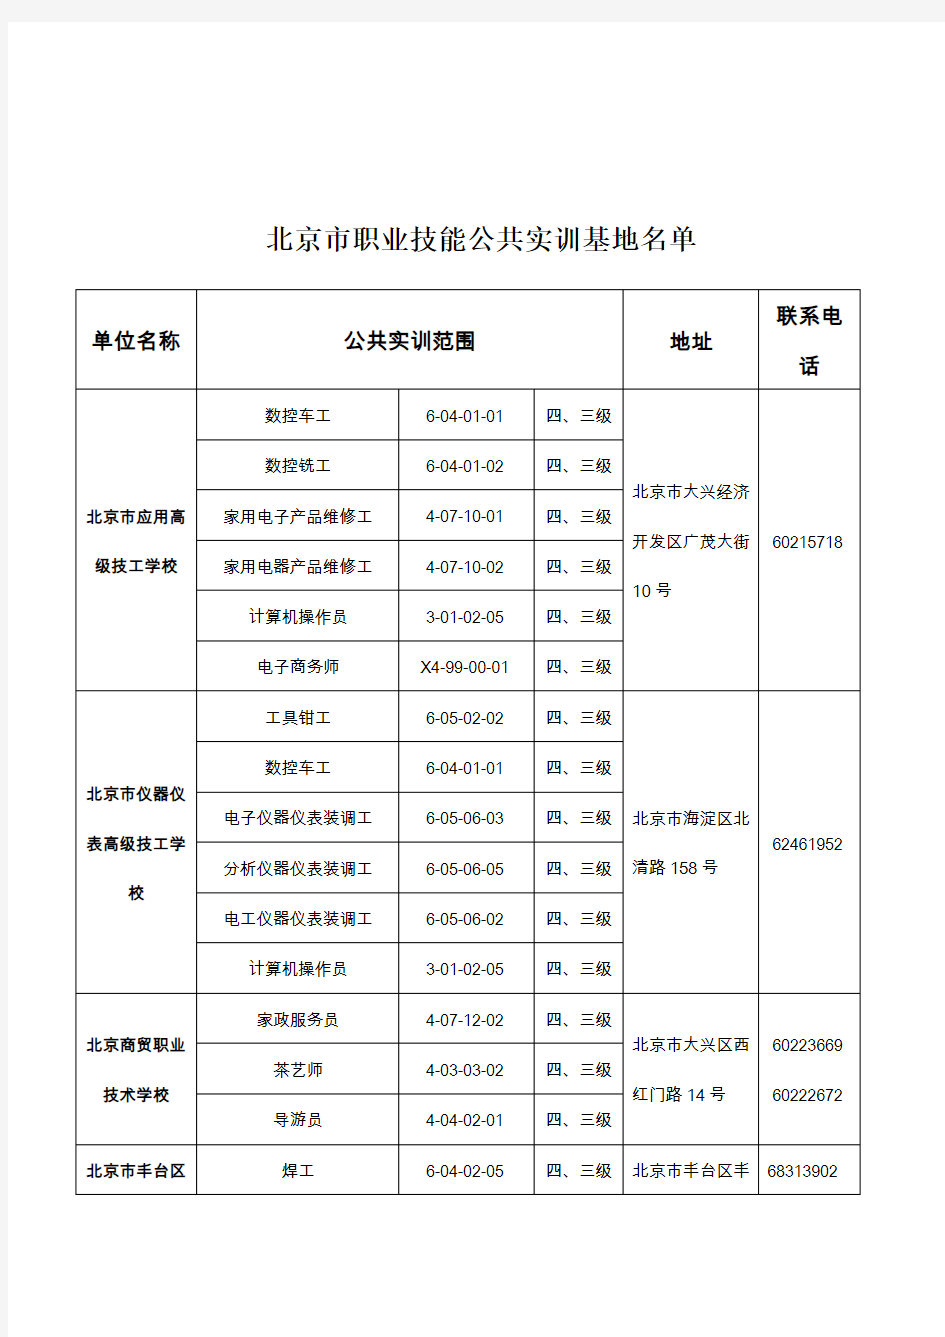 北京市职业技能公共实训基地名单